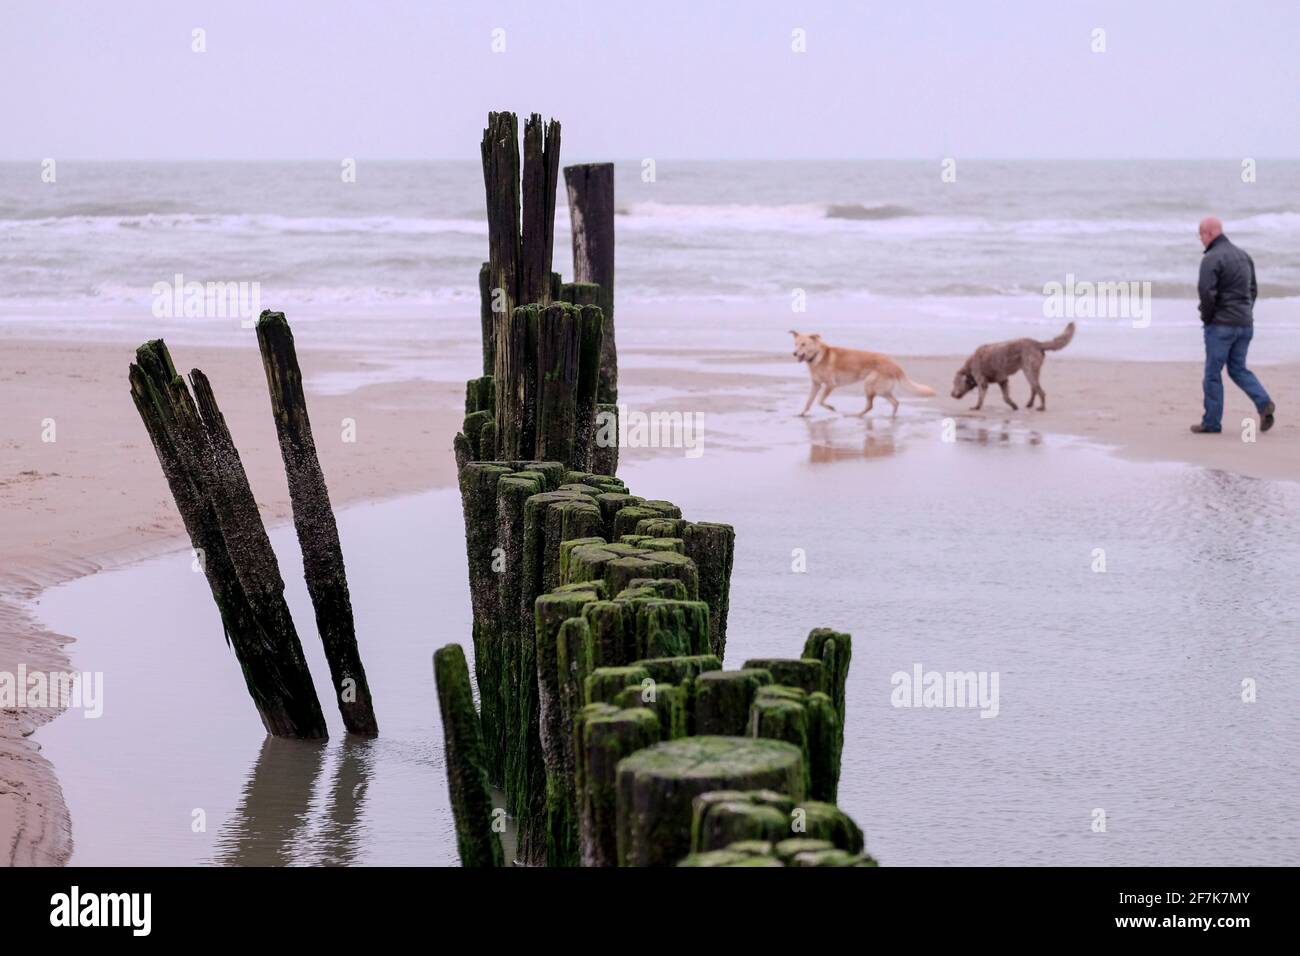 NLD, Niederlande, Nordholland, Bergen aan Zee, 26.12.2018: Strandspaziergaenger mit Hunden am Strand von Bergen aan Zee Foto Stock